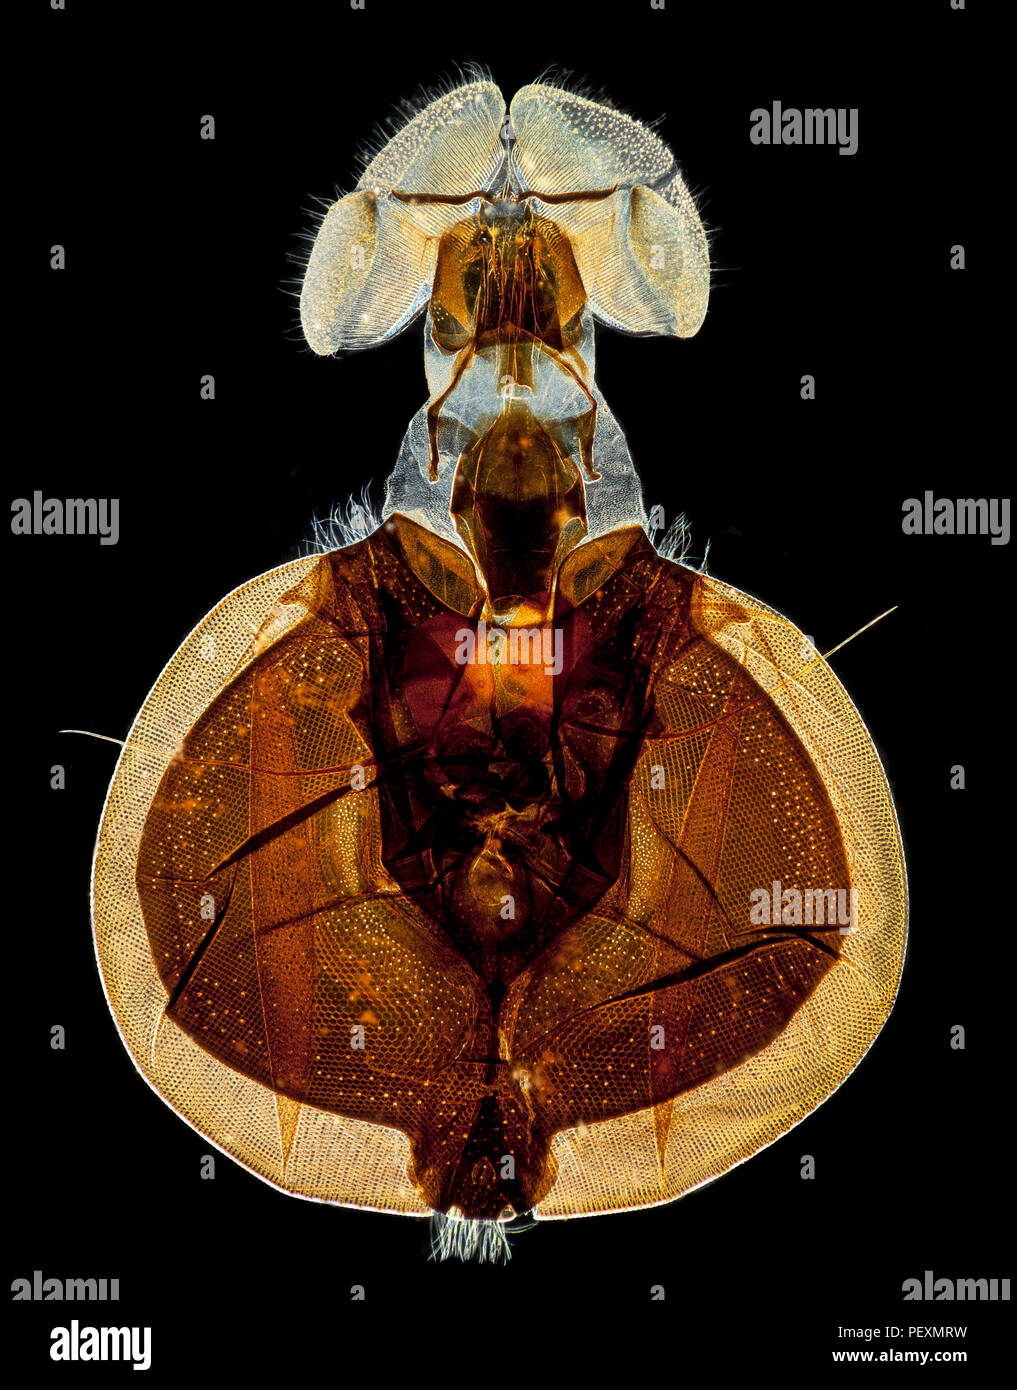 Typische schmeißfliege Beispiel, Dunkelfeld photomicrograph mit Facettenaugen und Schwamm wie Rüssel Stockfoto